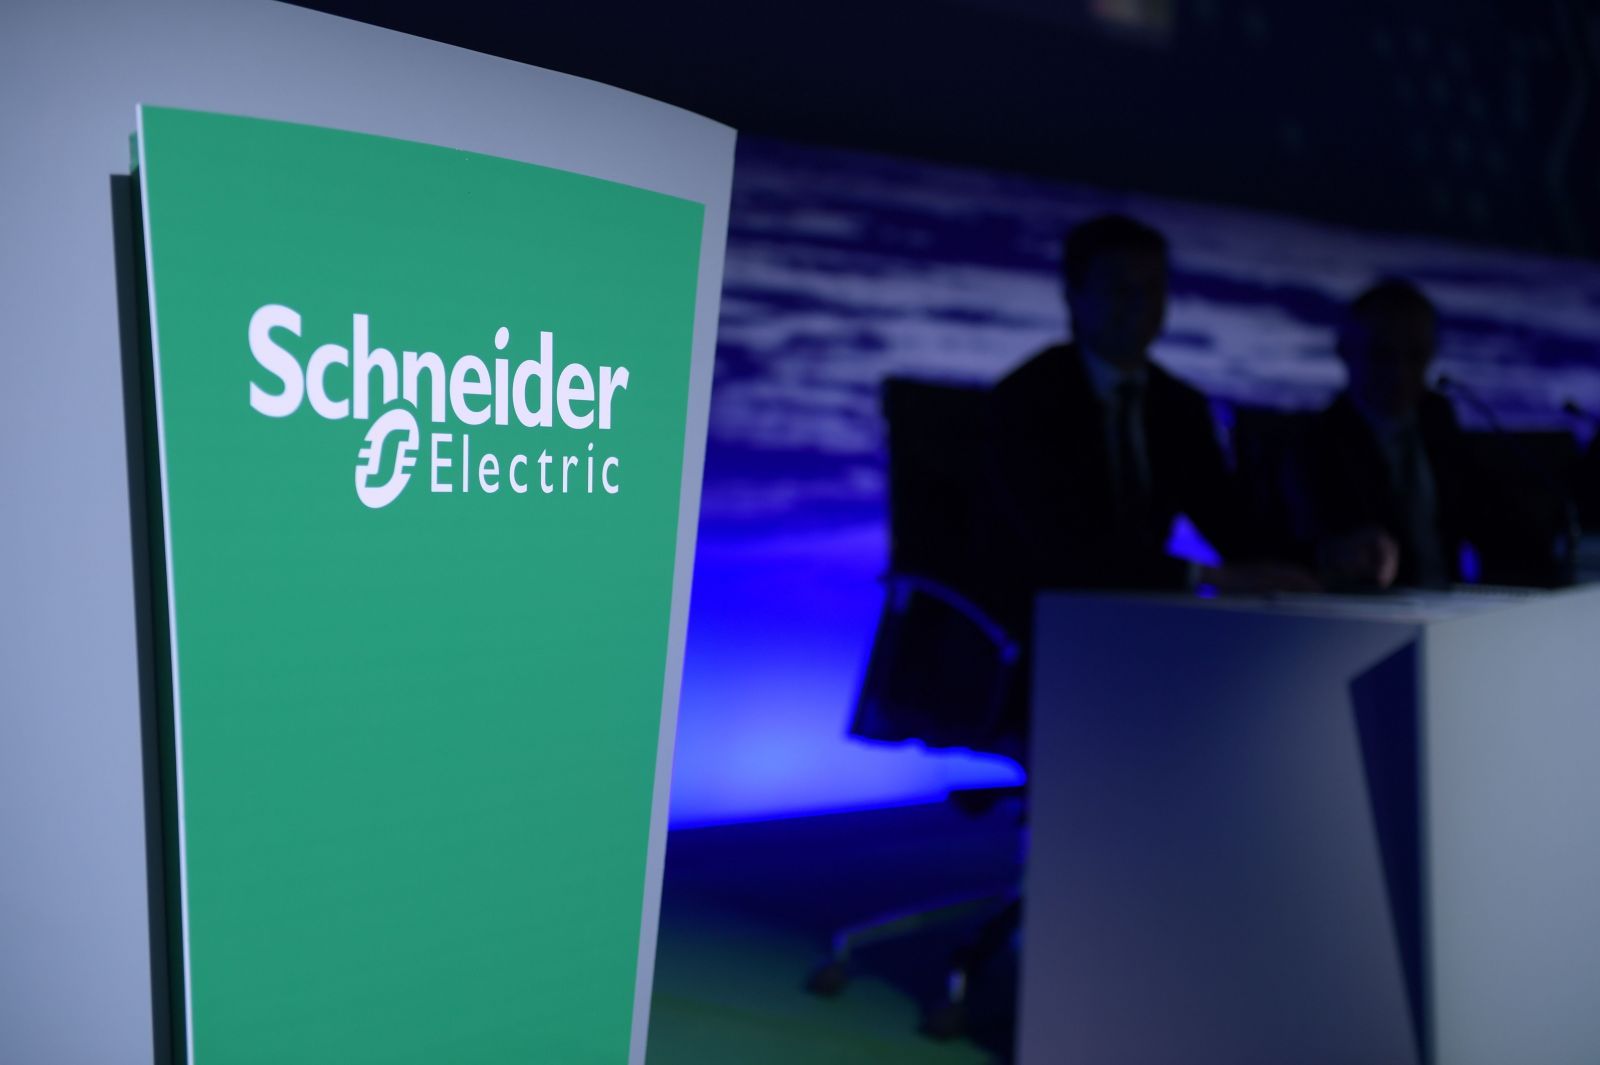 Hội nghị thượng đỉnh về Đổi mới sáng tạo của Schneider Electric tại Singapore: Tiếp thêm sức mạnh và Số hóa nền kinh tế